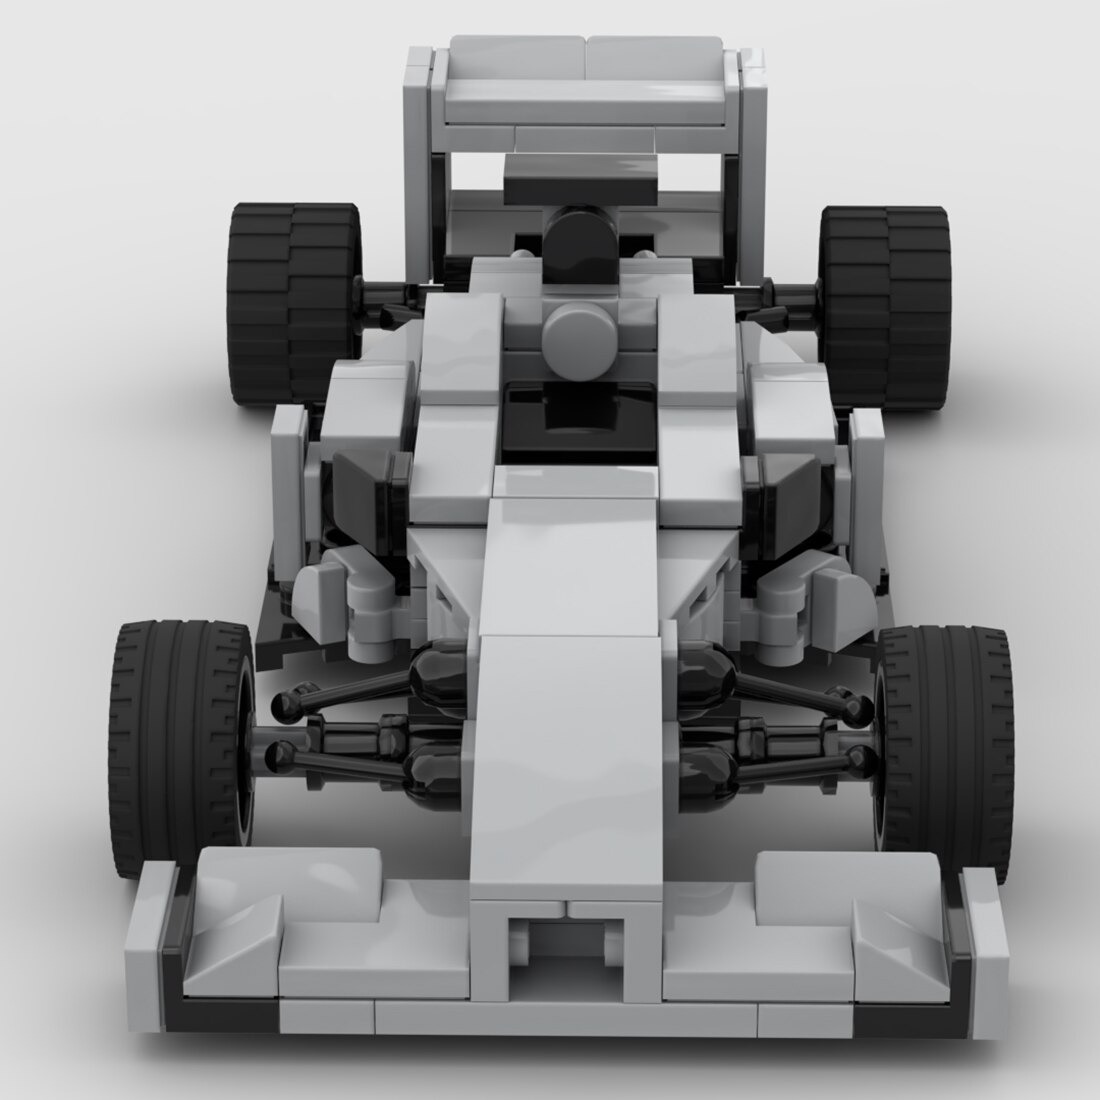 Technic MOC-102783 W01 Super Formula Racing Car MOCBRICKLAND